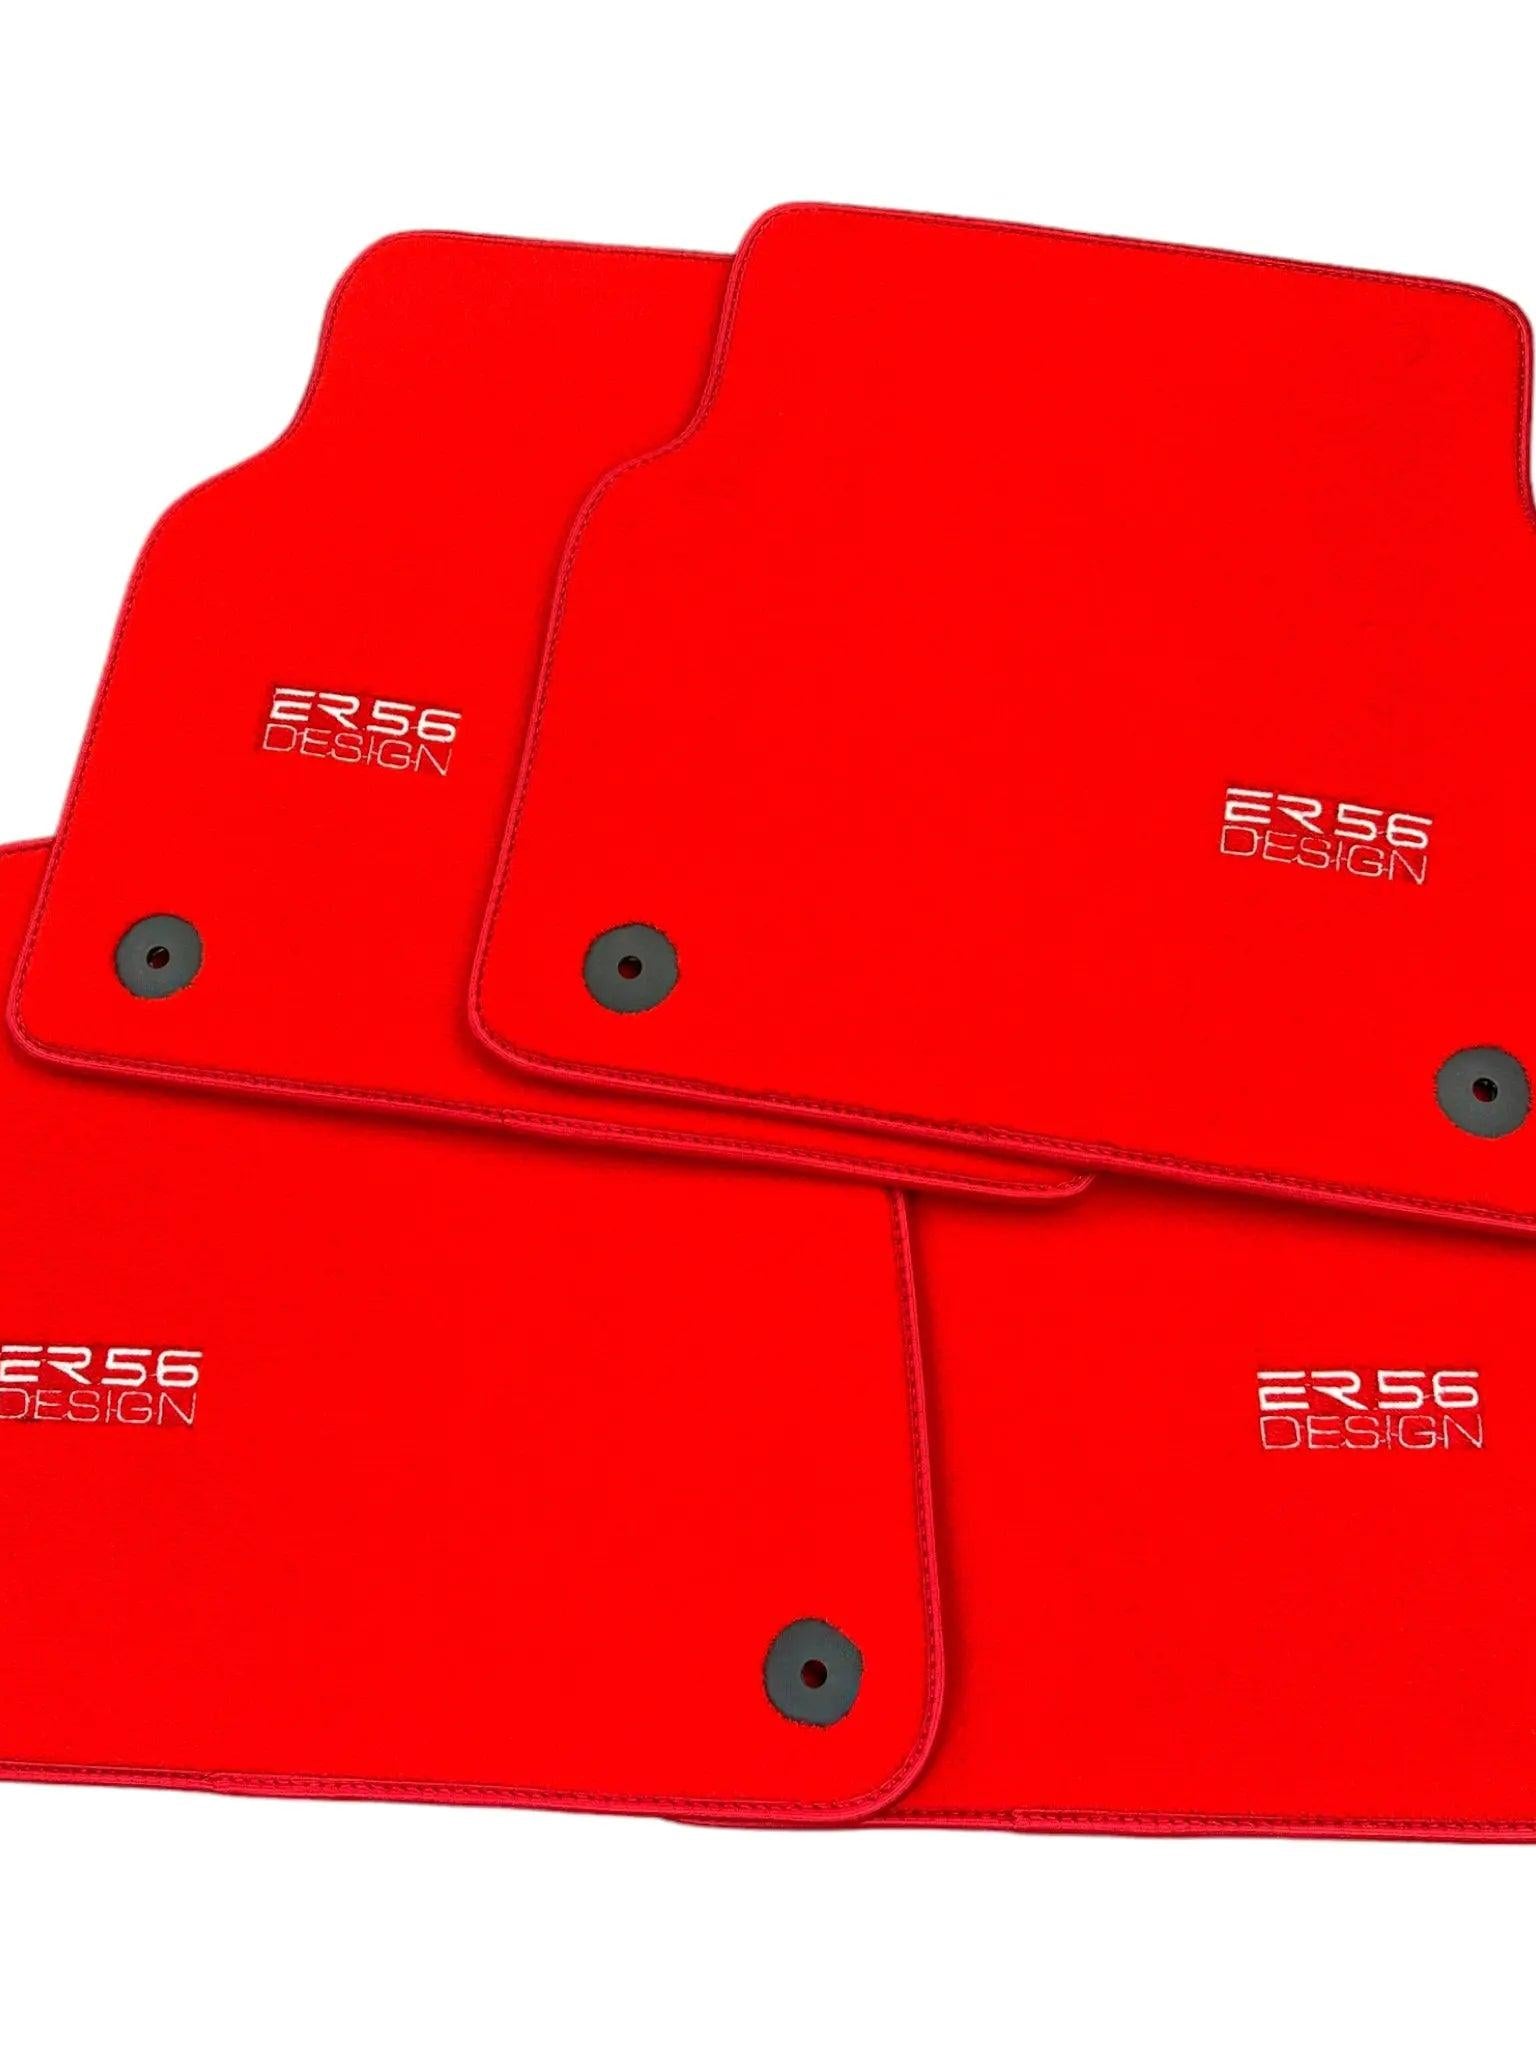 Red Floor Mats for Audi A5 - F57 Sportback (2020-2023) | ER56 Design